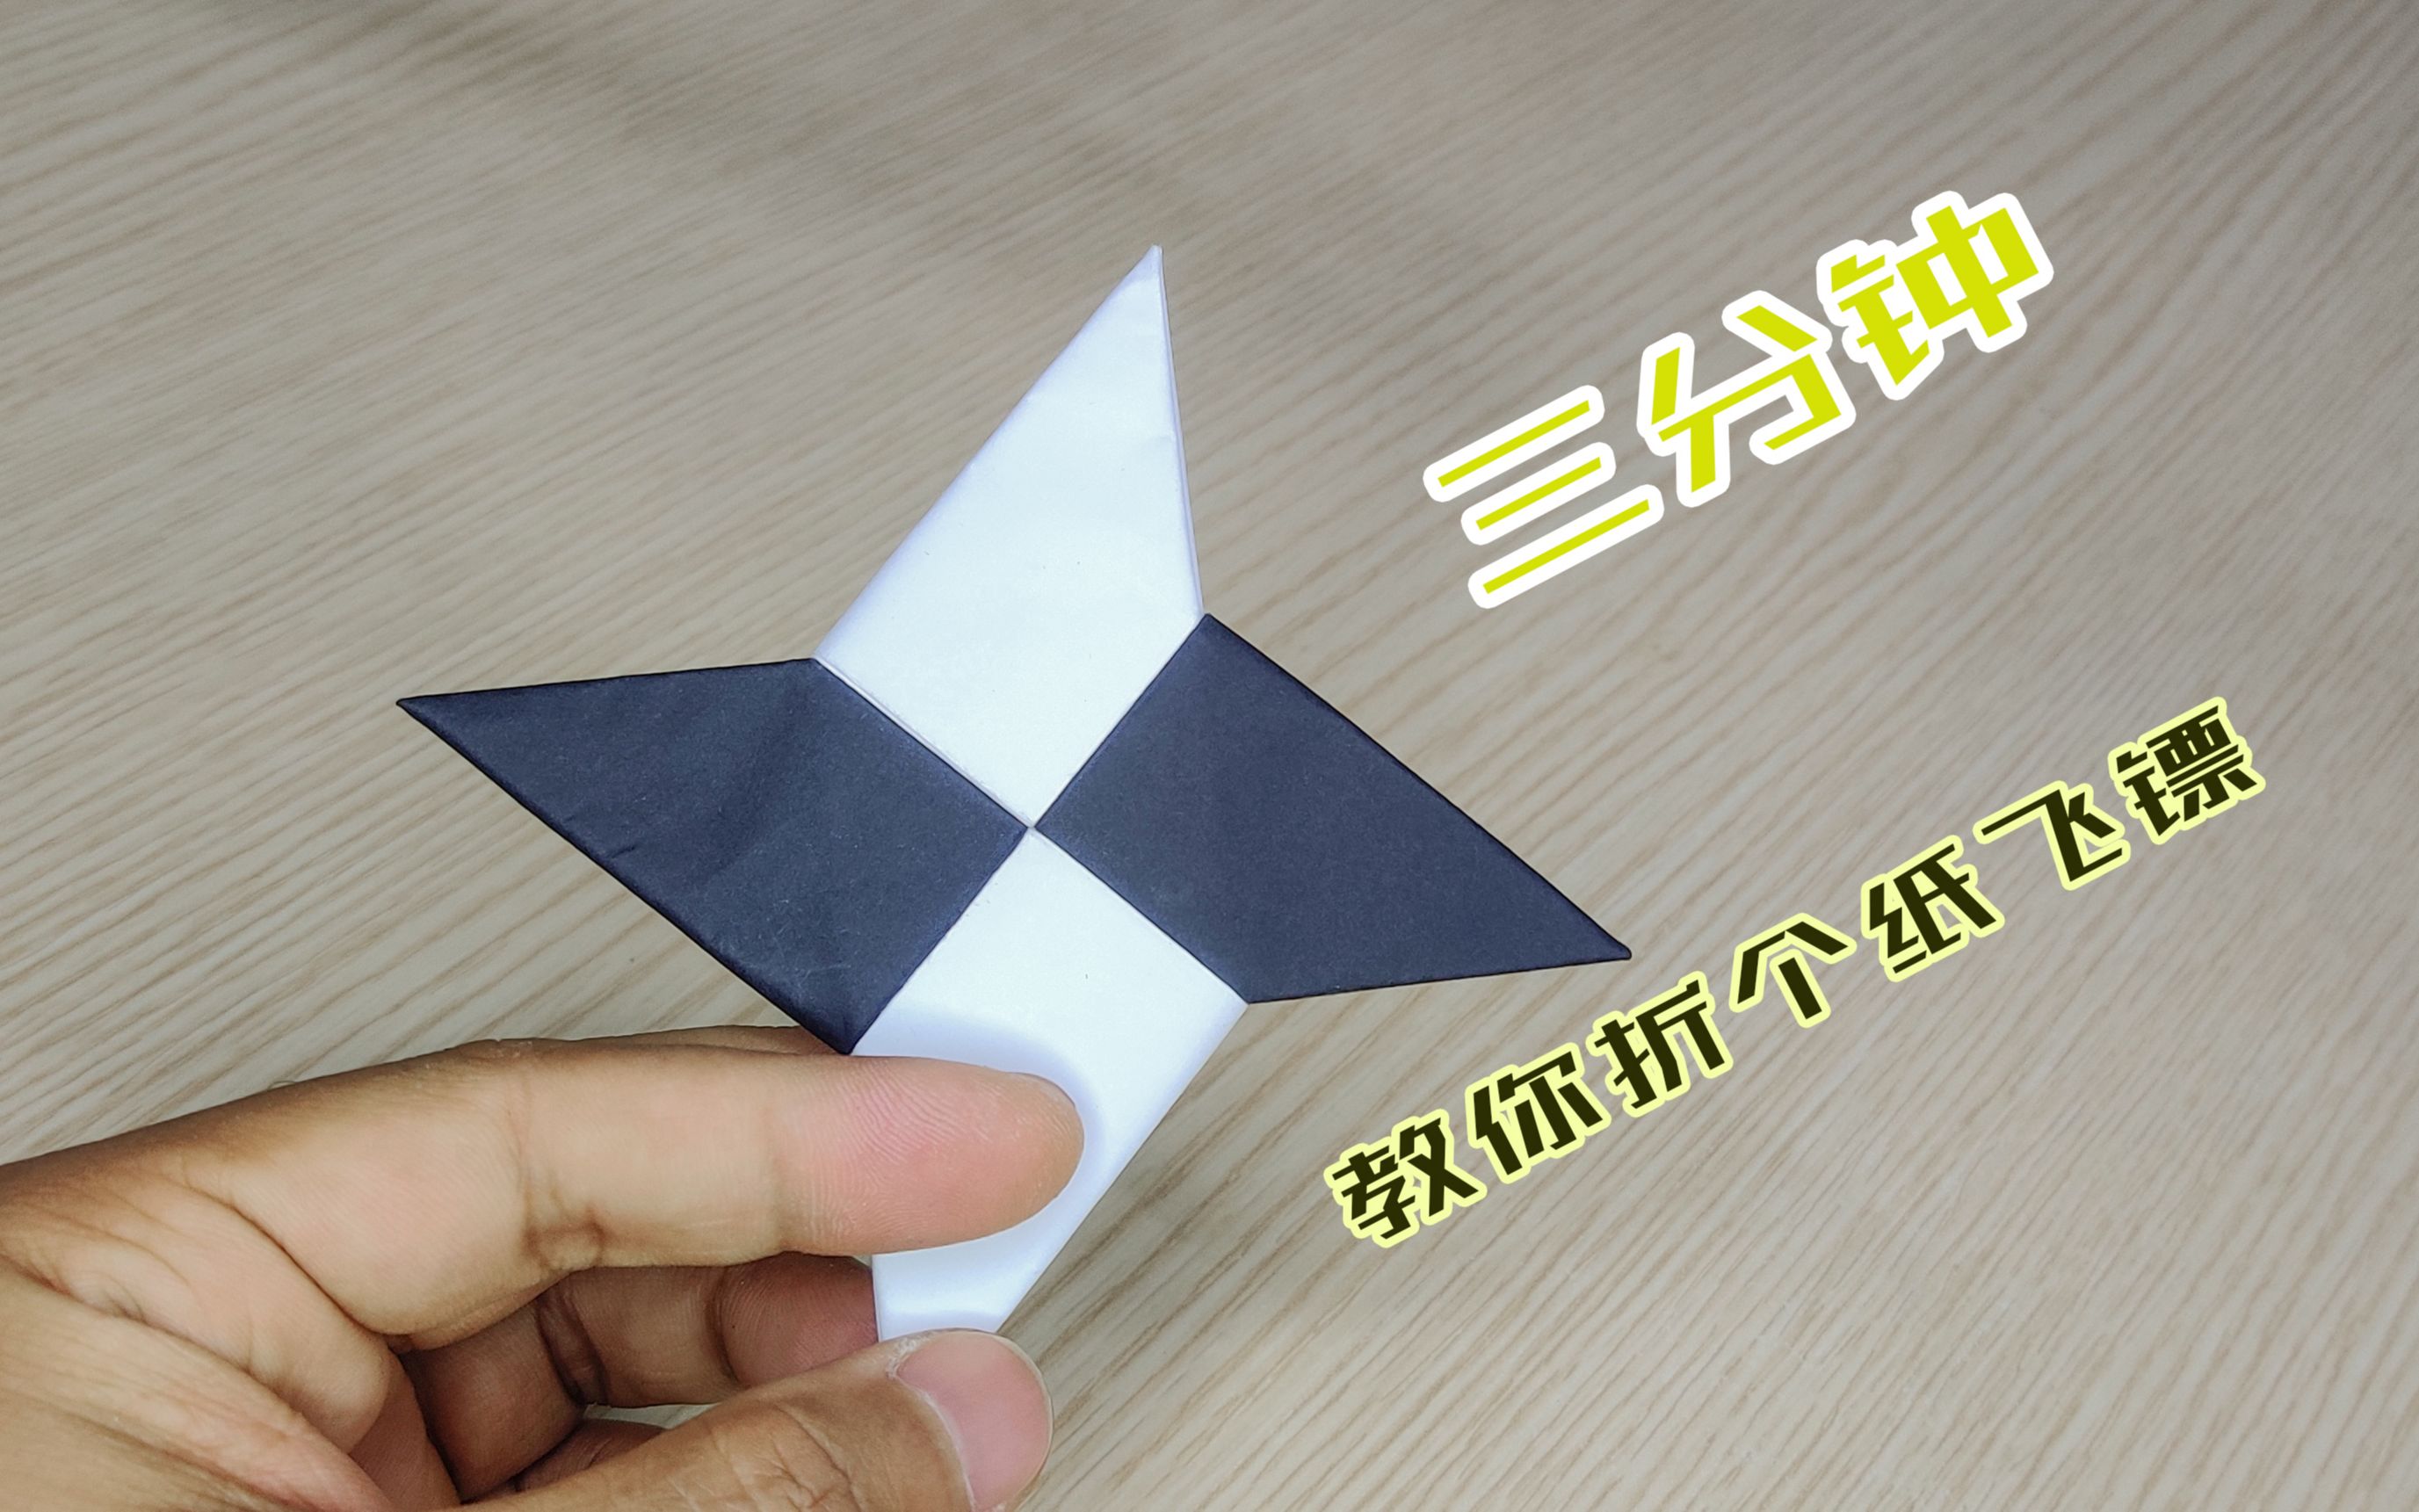 一张折纸飞镖图片